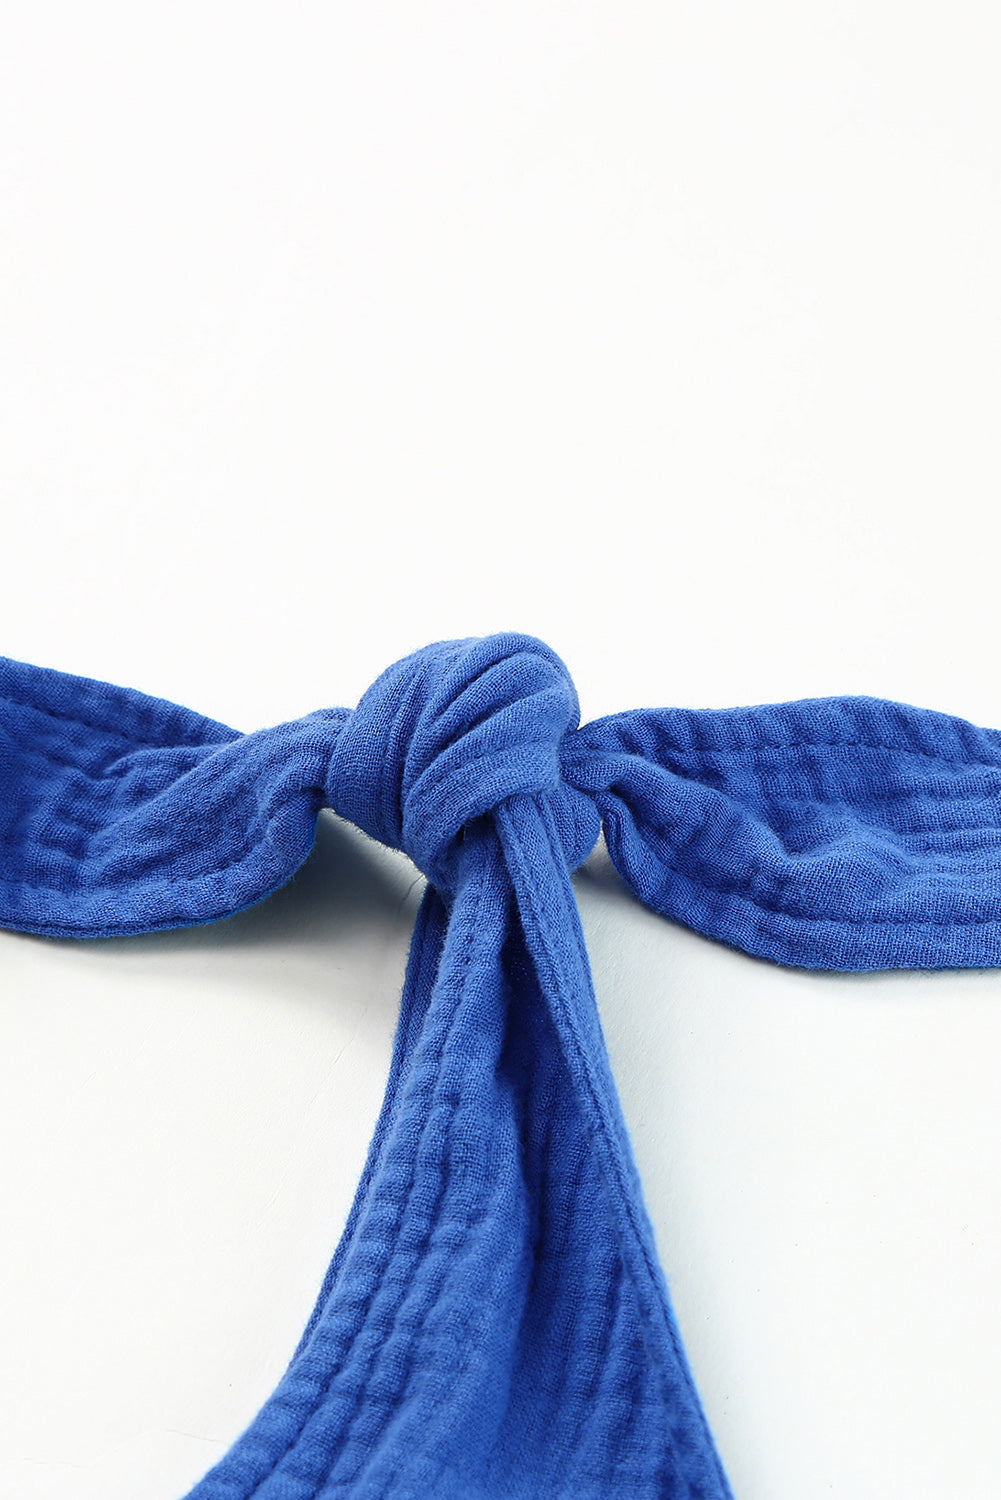 Hlače sa širokim nogavicama s plavim teksturama na naramenice s visokim strukom